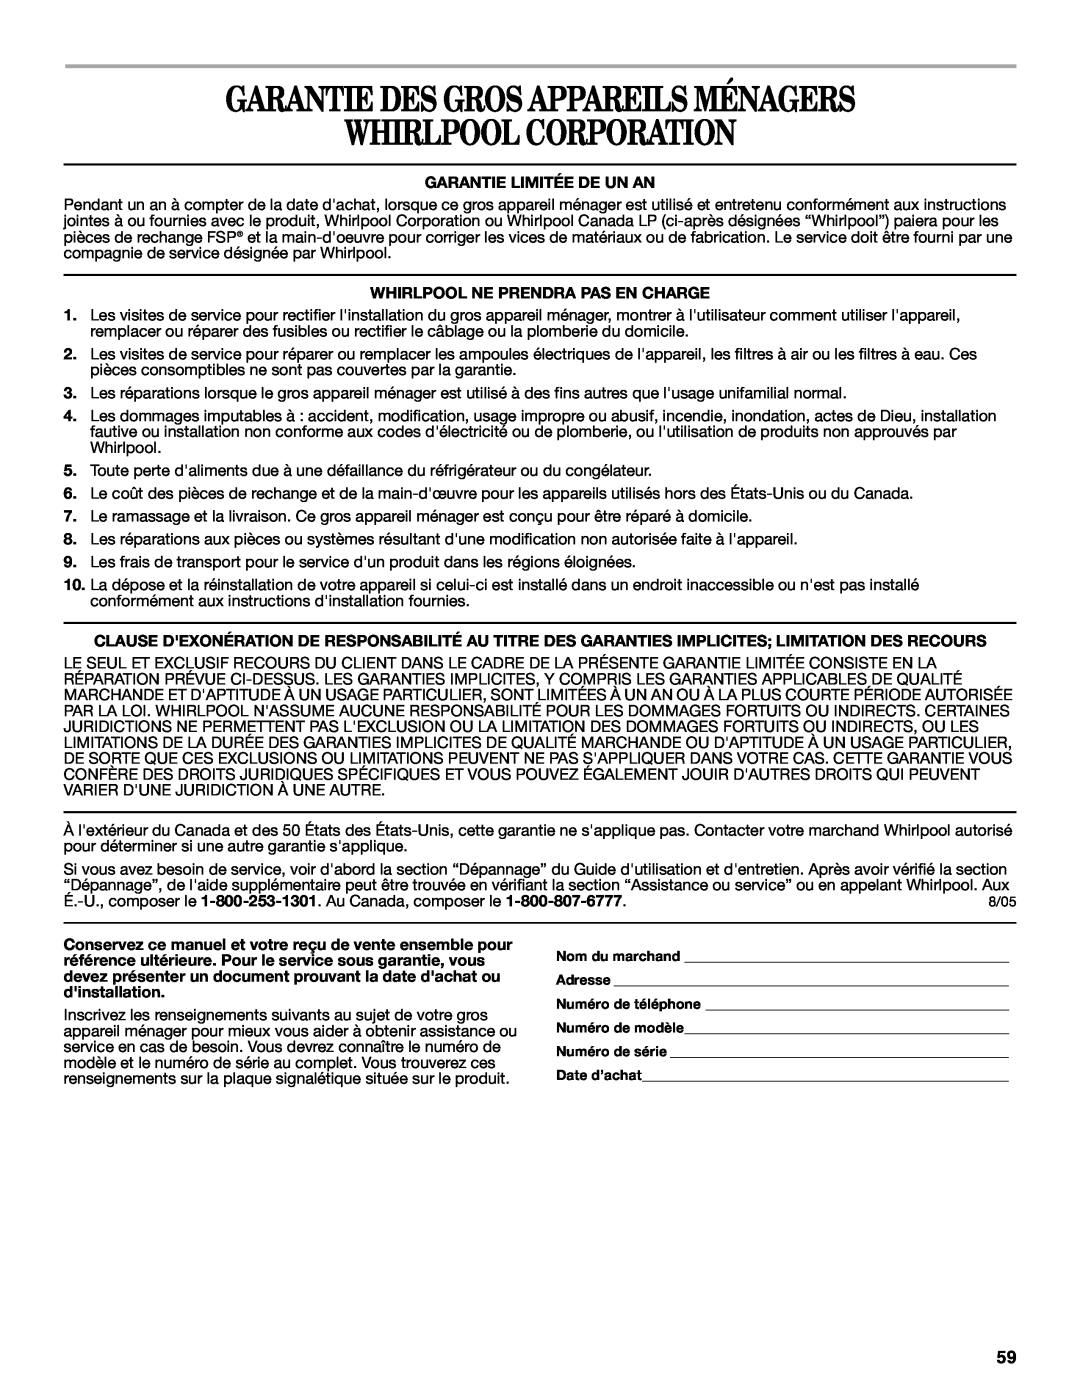 Whirlpool GERC4110PB2 manual Garantie Des Gros Appareils Ménagers, Whirlpool Corporation, Garantie Limitée De Un An 